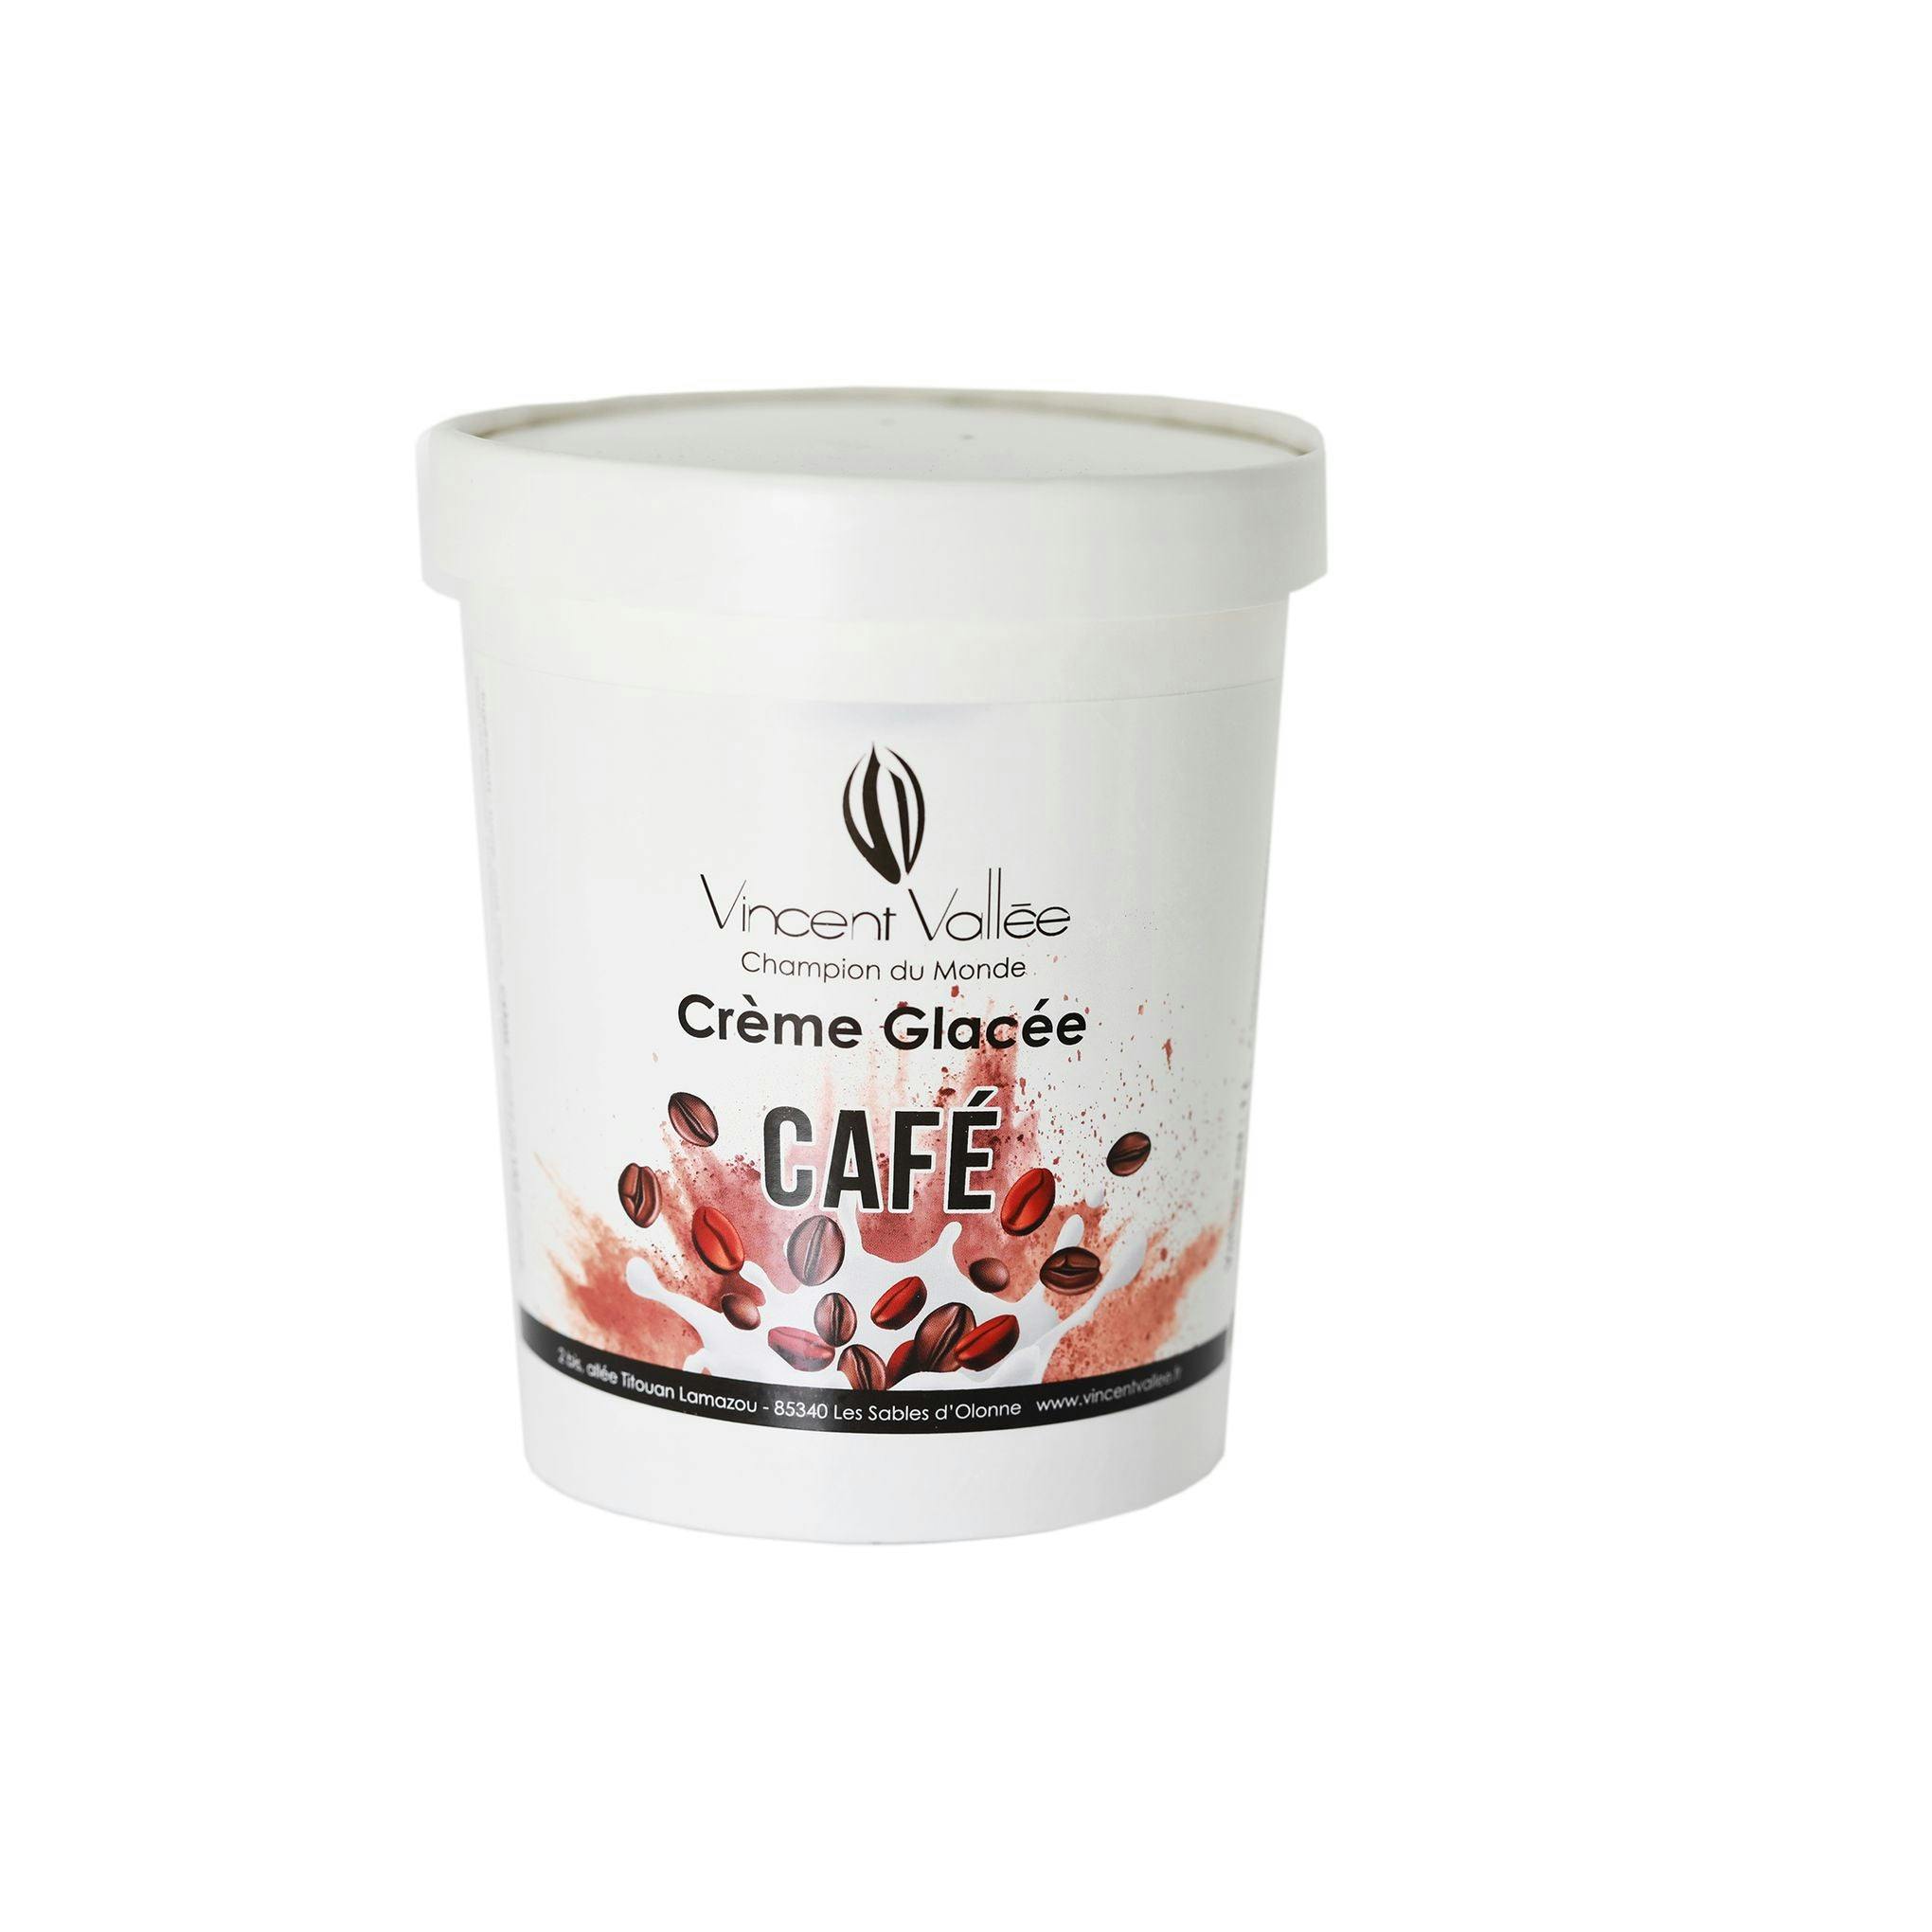 Crème glacée Café - Vincent Vallée chocolatier champion du monde